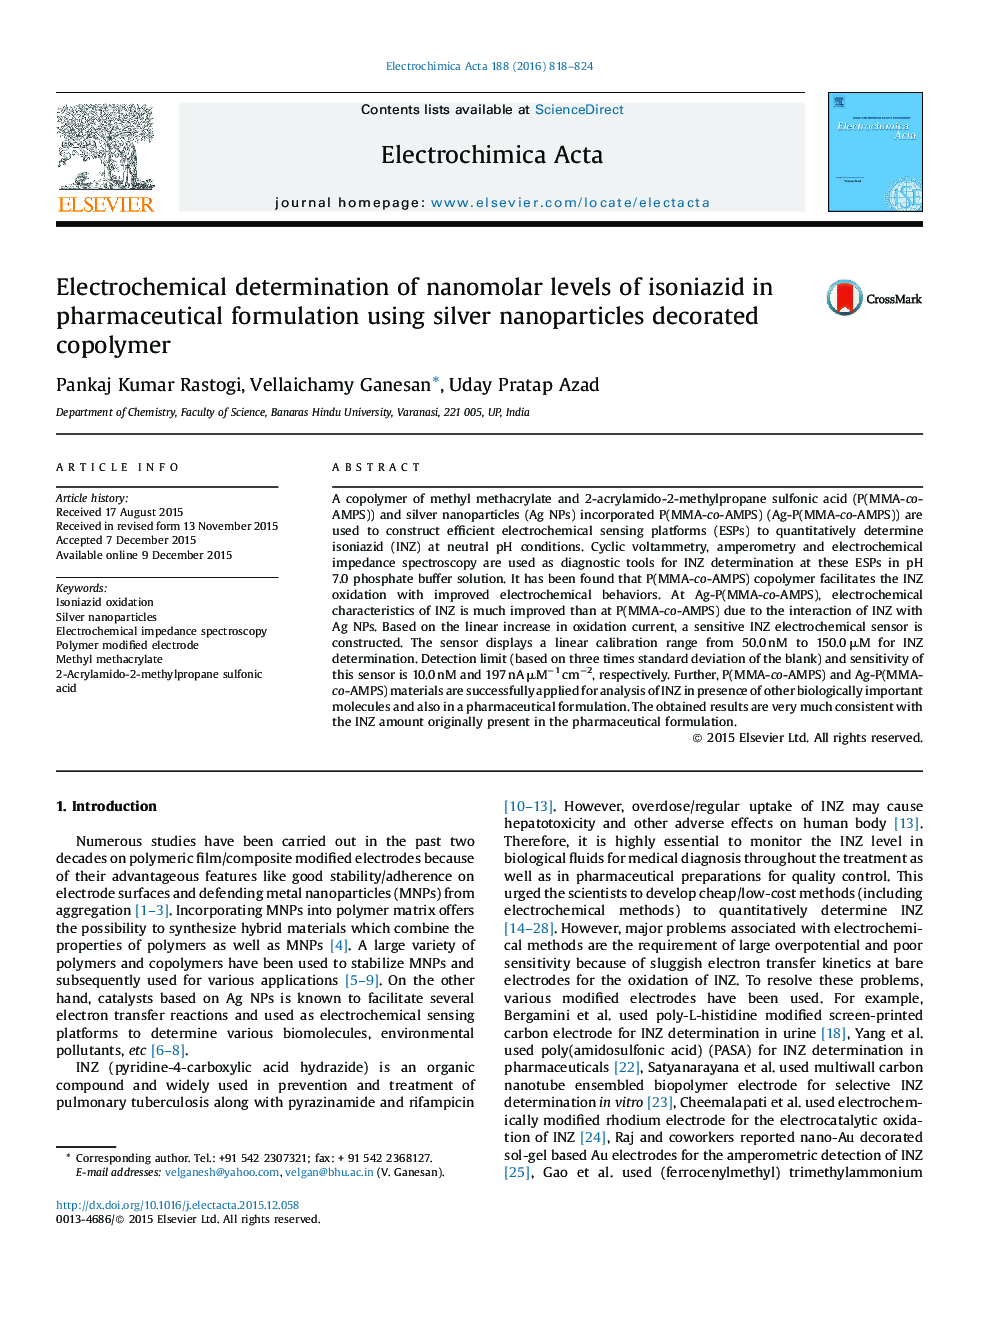 تعیین الکتروشیمیایی سطح نانومولار ایزونیزید در فرمولاسیون دارویی با استفاده از کوپلیمر نقره ای نانوذرات 